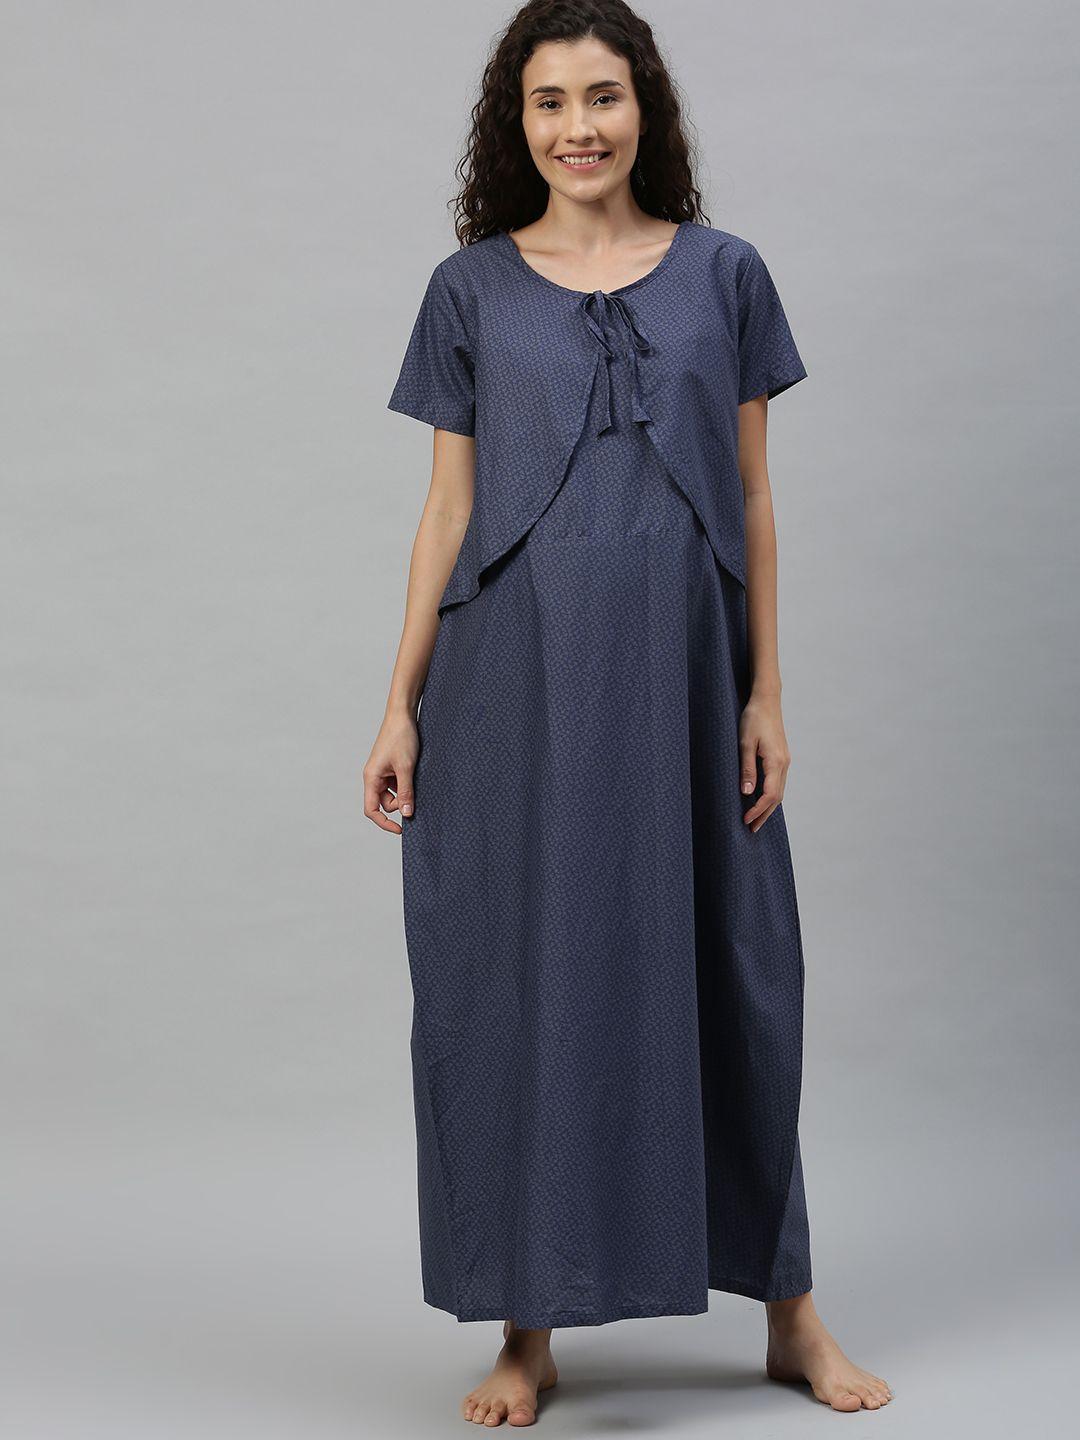 nejo-navy-blue-printed-feeding-nightdress